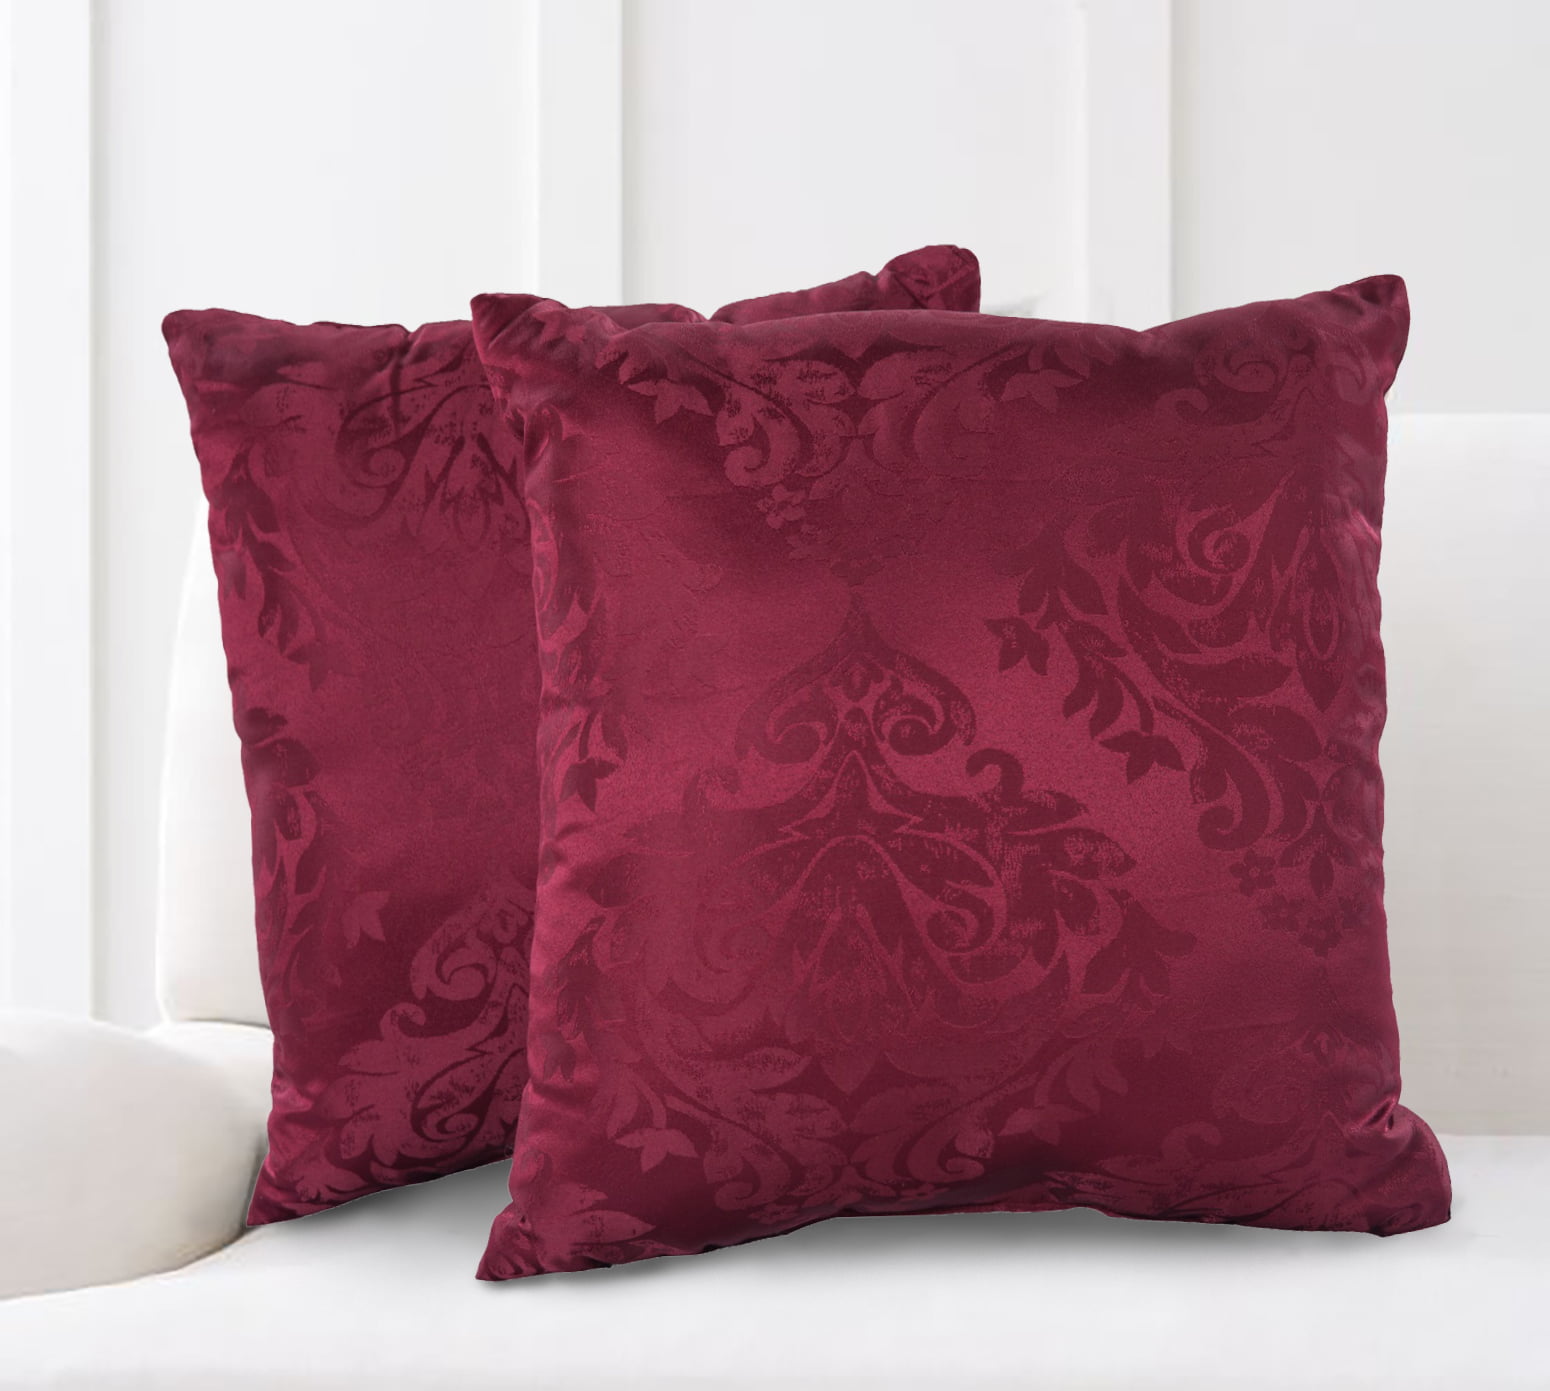 Mainstays Damask Jacquard Decorative Throw Pillow Set, 2pk, Burgundy ...